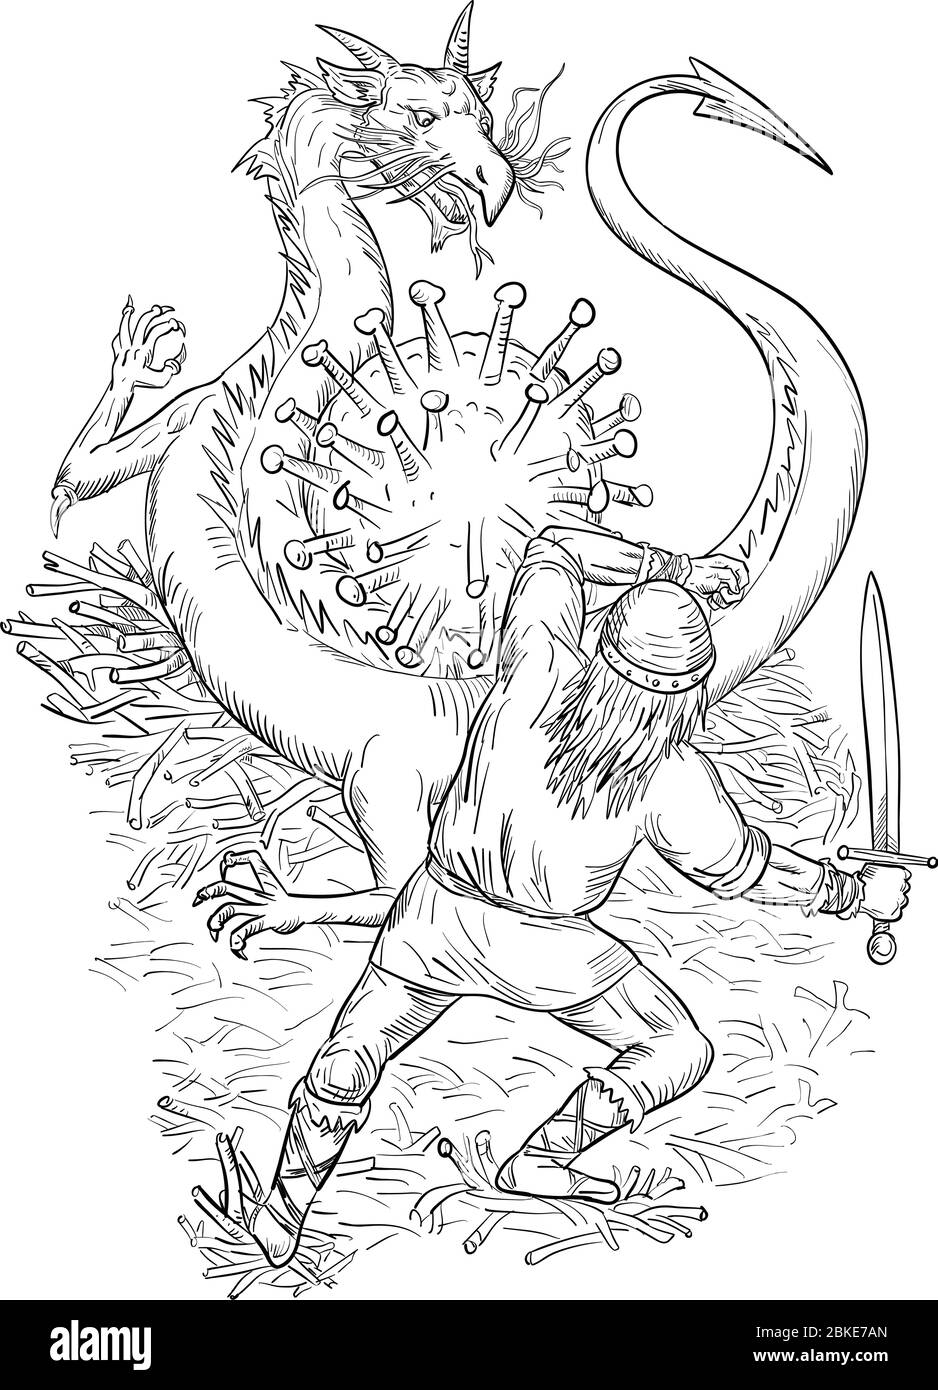 Dessin d'un dessin de style illustration d'un chevalier médiéval courageux luttant contre un dragon agressif en colère protégeant le coronavirus ou la cellule covid-19 sur des whi isolés Illustration de Vecteur